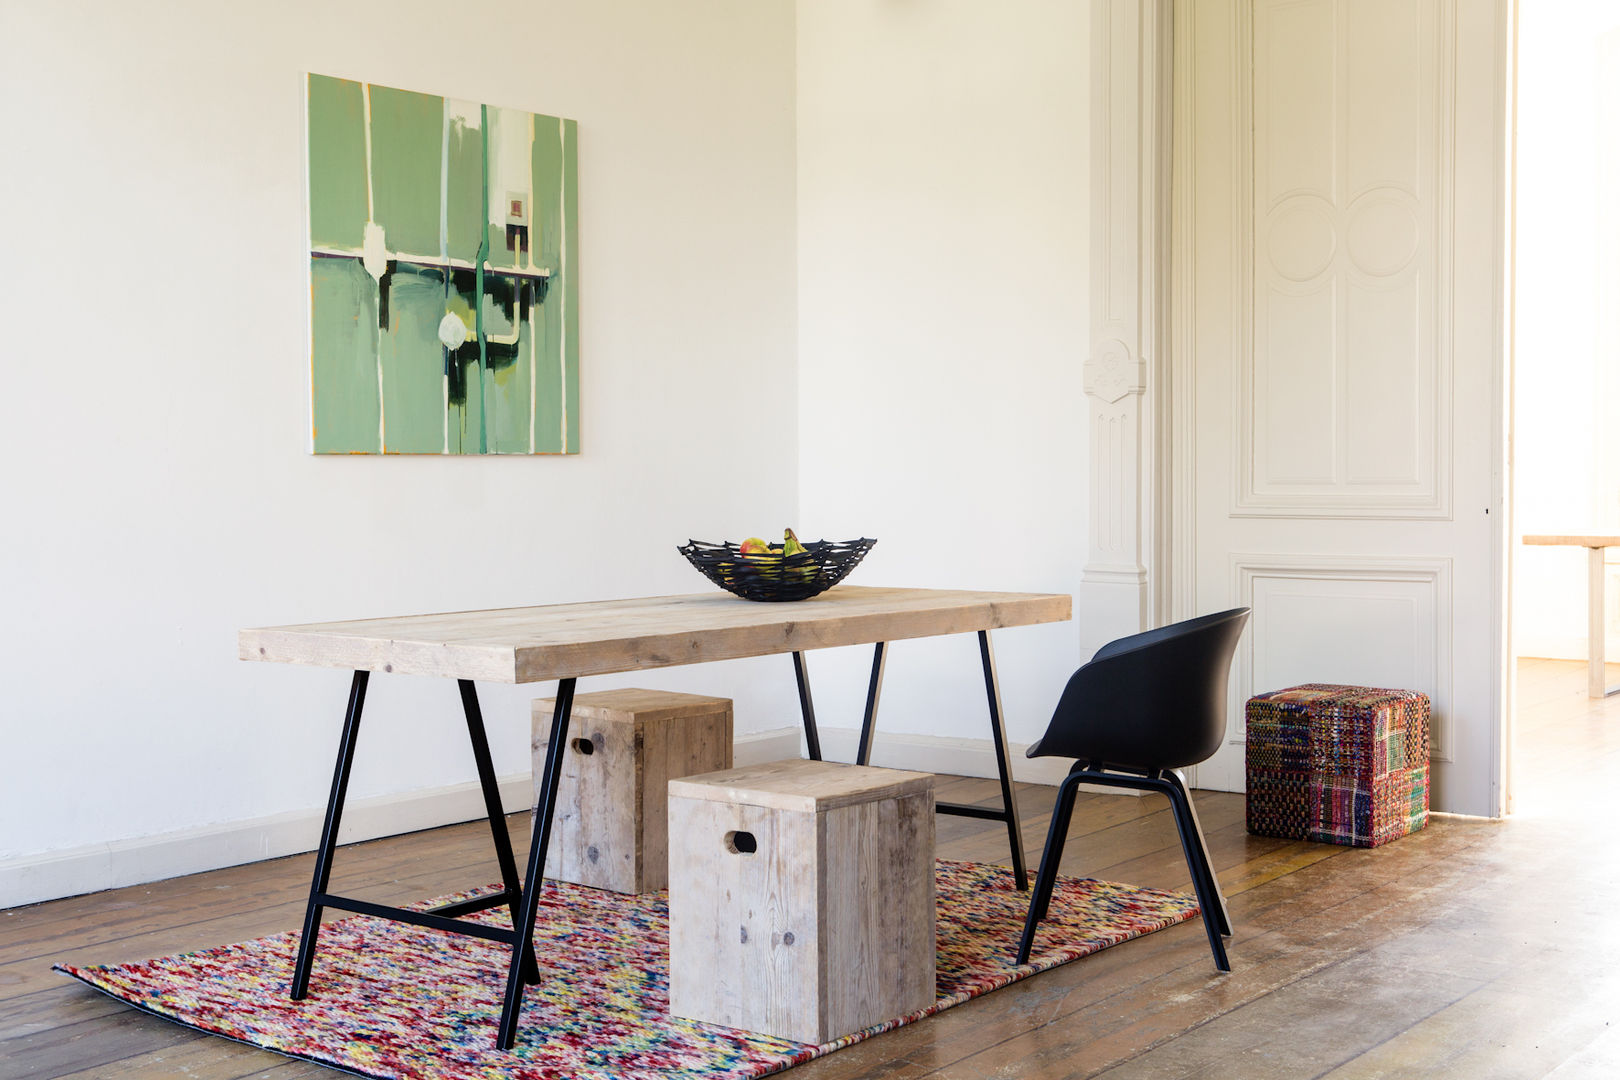 Tisch aus Bauholz mit Trägern, PURE Wood Design PURE Wood Design Sala da pranzo in stile scandinavo Tavoli